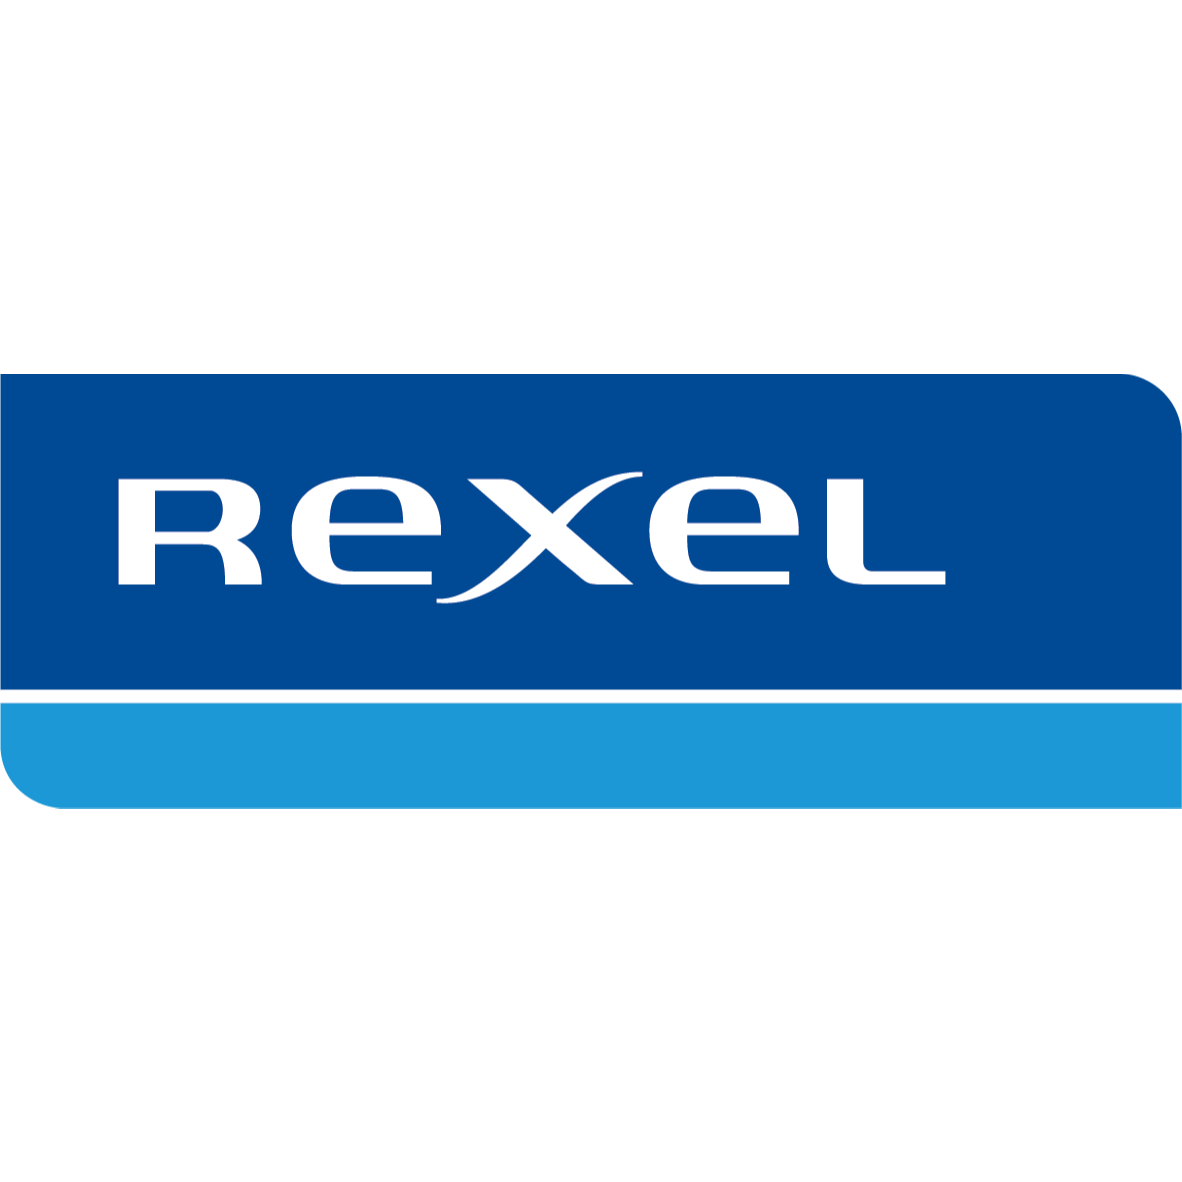 Rexel - Tyler, TX 75701 - (903)509-1673 | ShowMeLocal.com